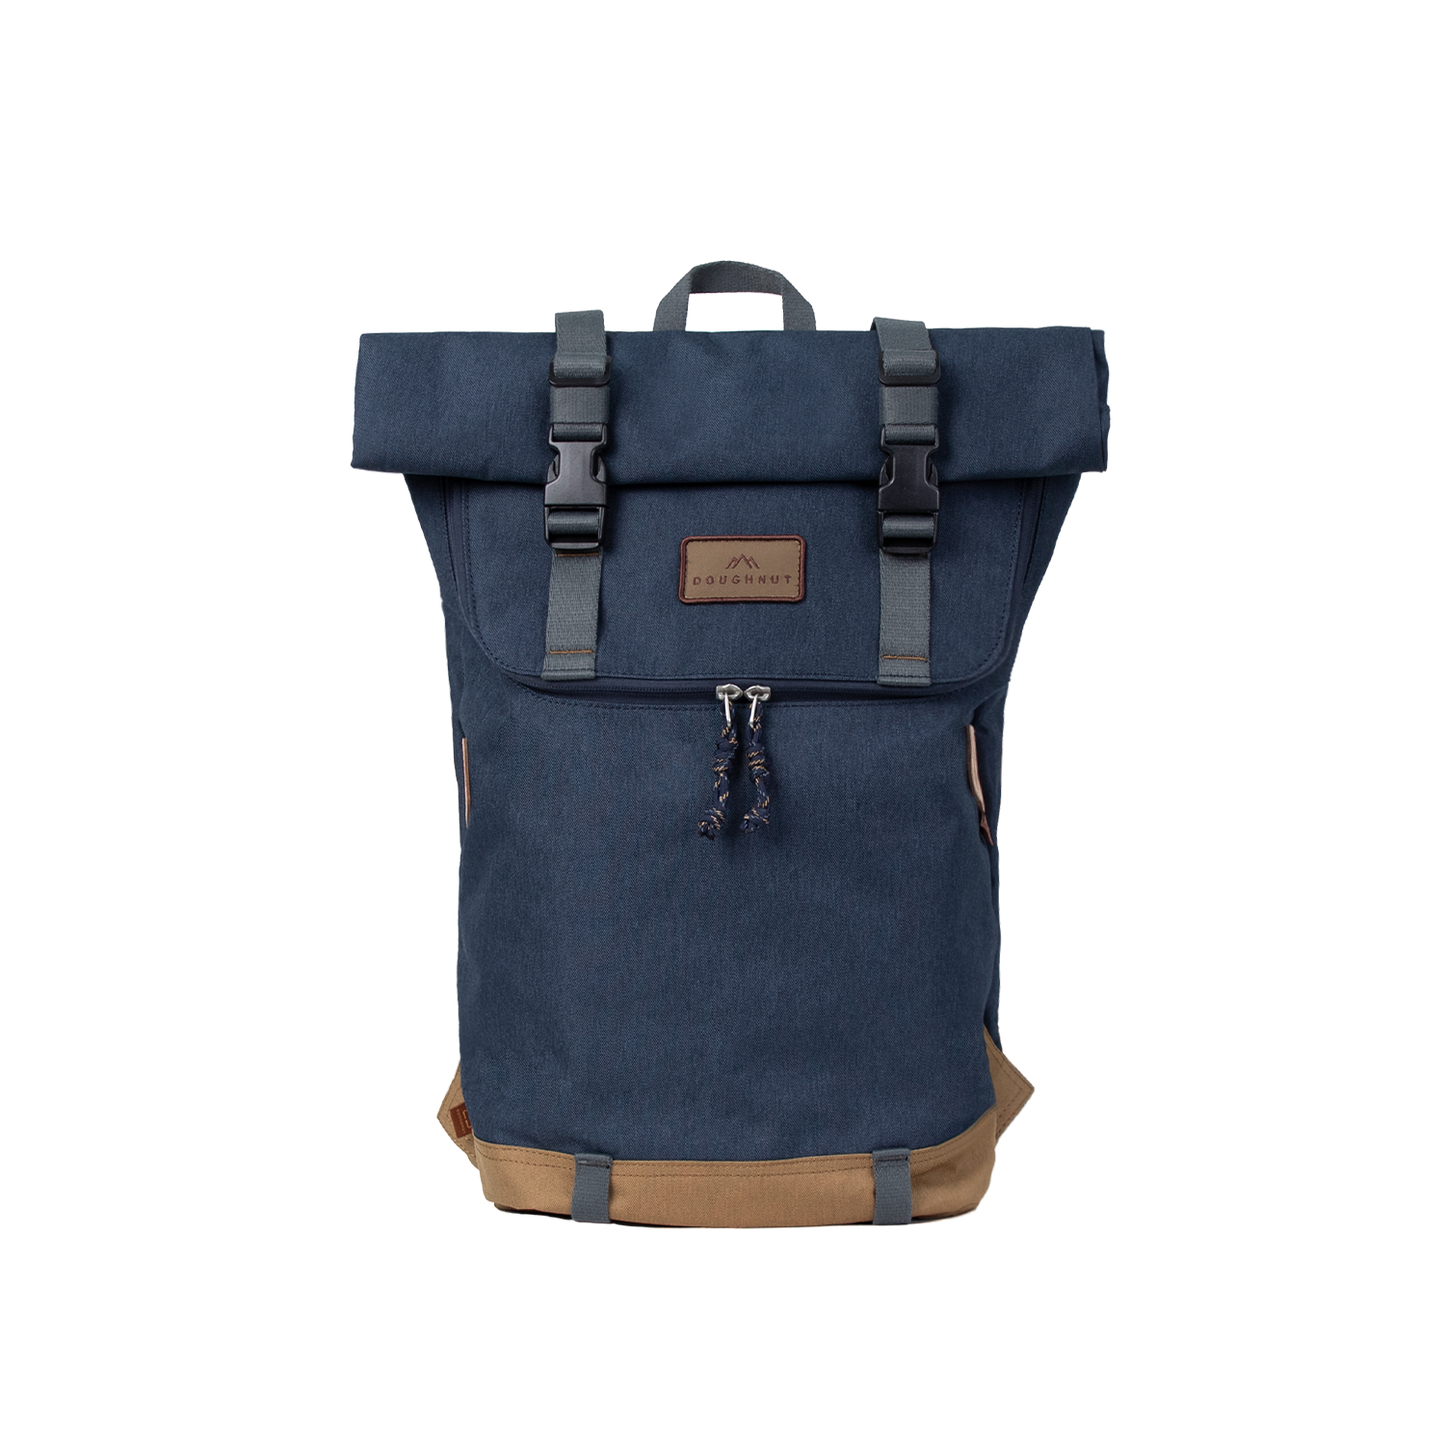 Christopher Backpack bag